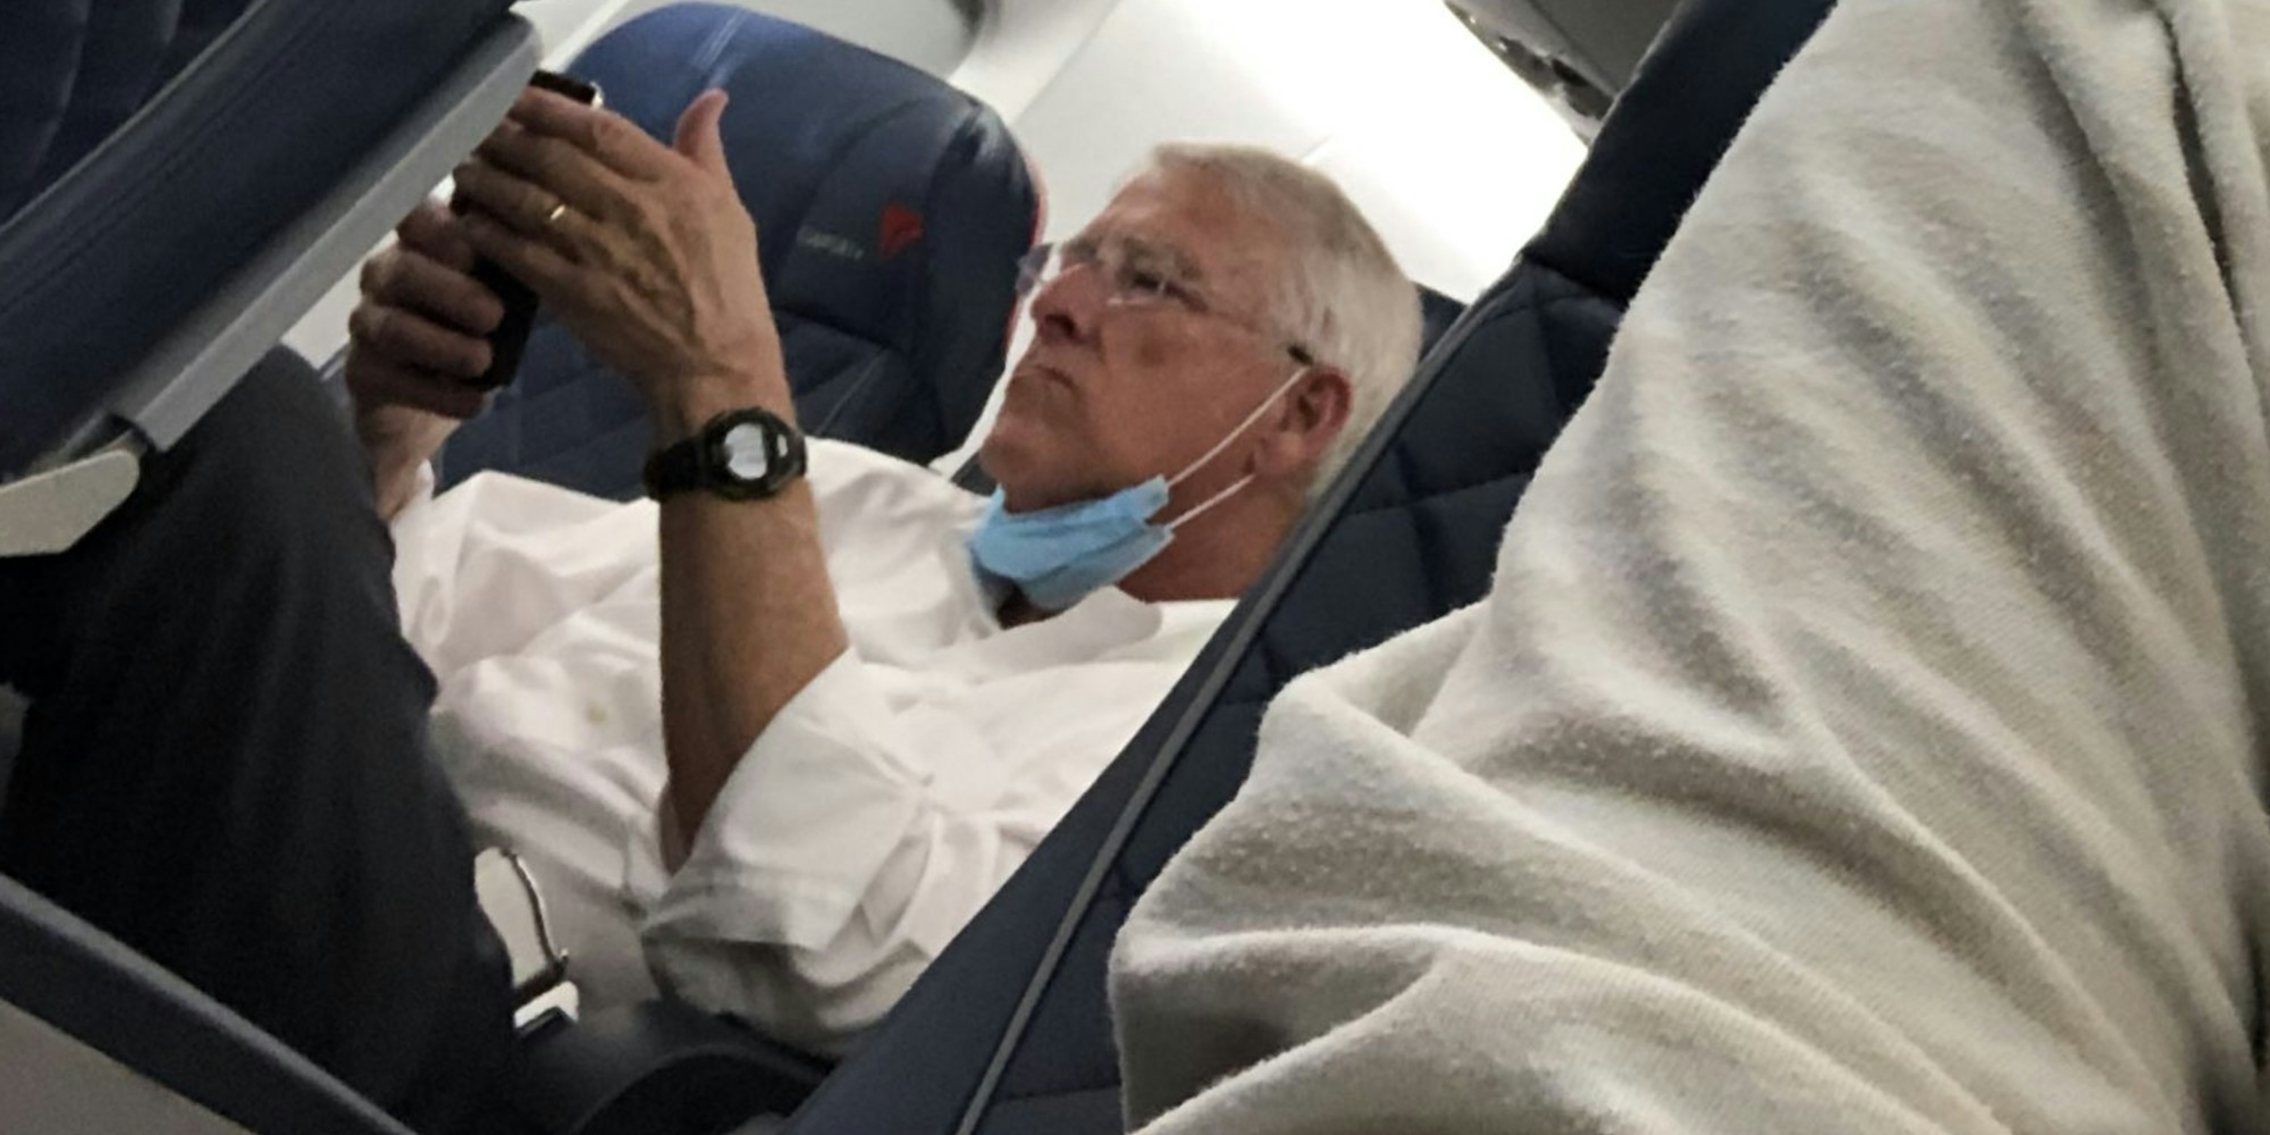 Senator Roger Wicker not wearing a mask on a plane